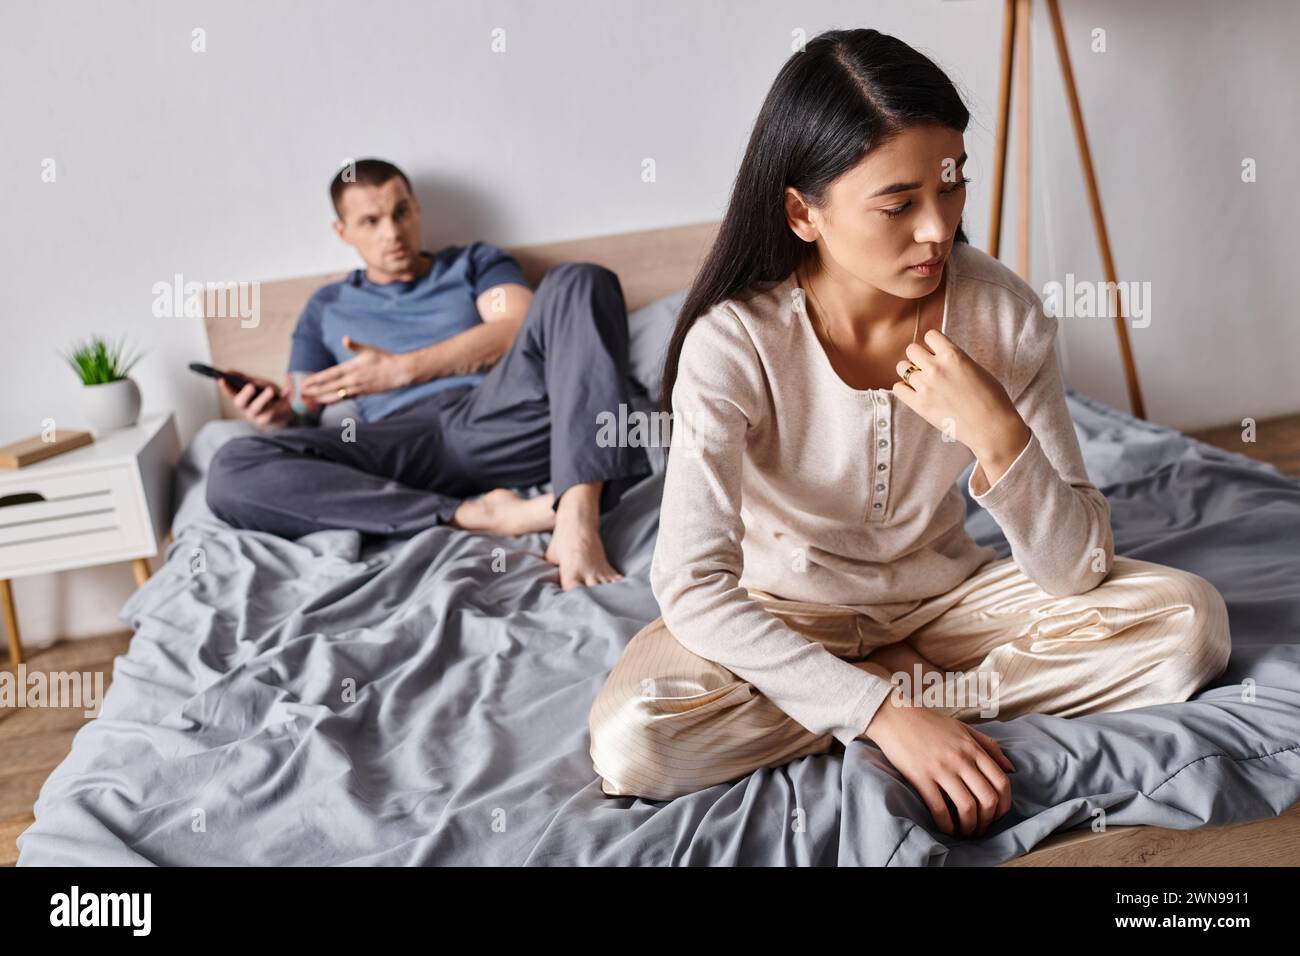 femme asiatique frustrée assise près du mari à l'aide d'un smartphone dans la chambre à coucher à la maison, problème familial Banque D'Images